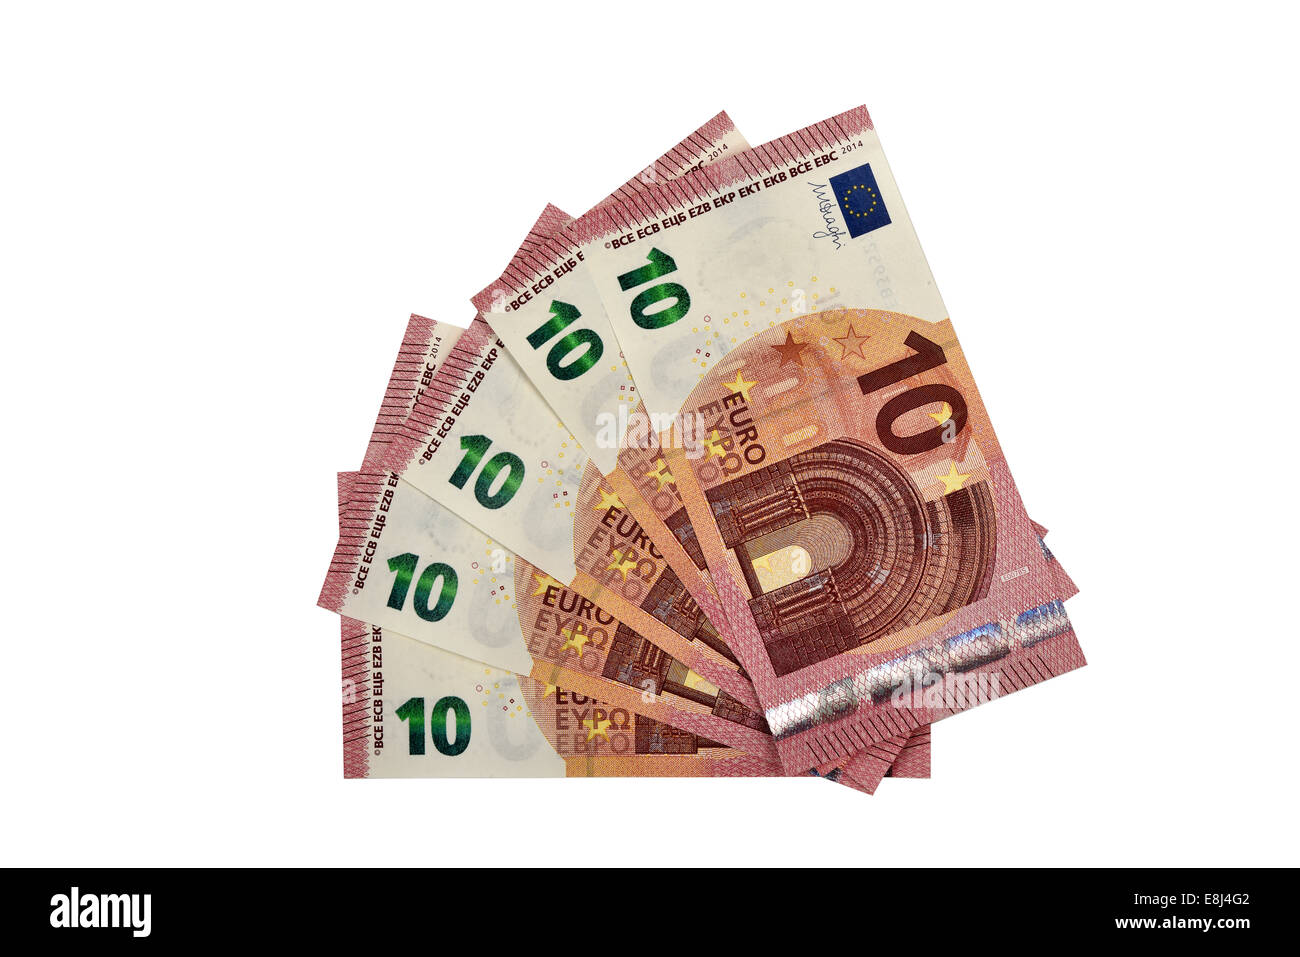 El nuevo billete de 10 euros entrará en circulación el 23 de septiembre -  El Día - Hemeroteca 13-01-2014